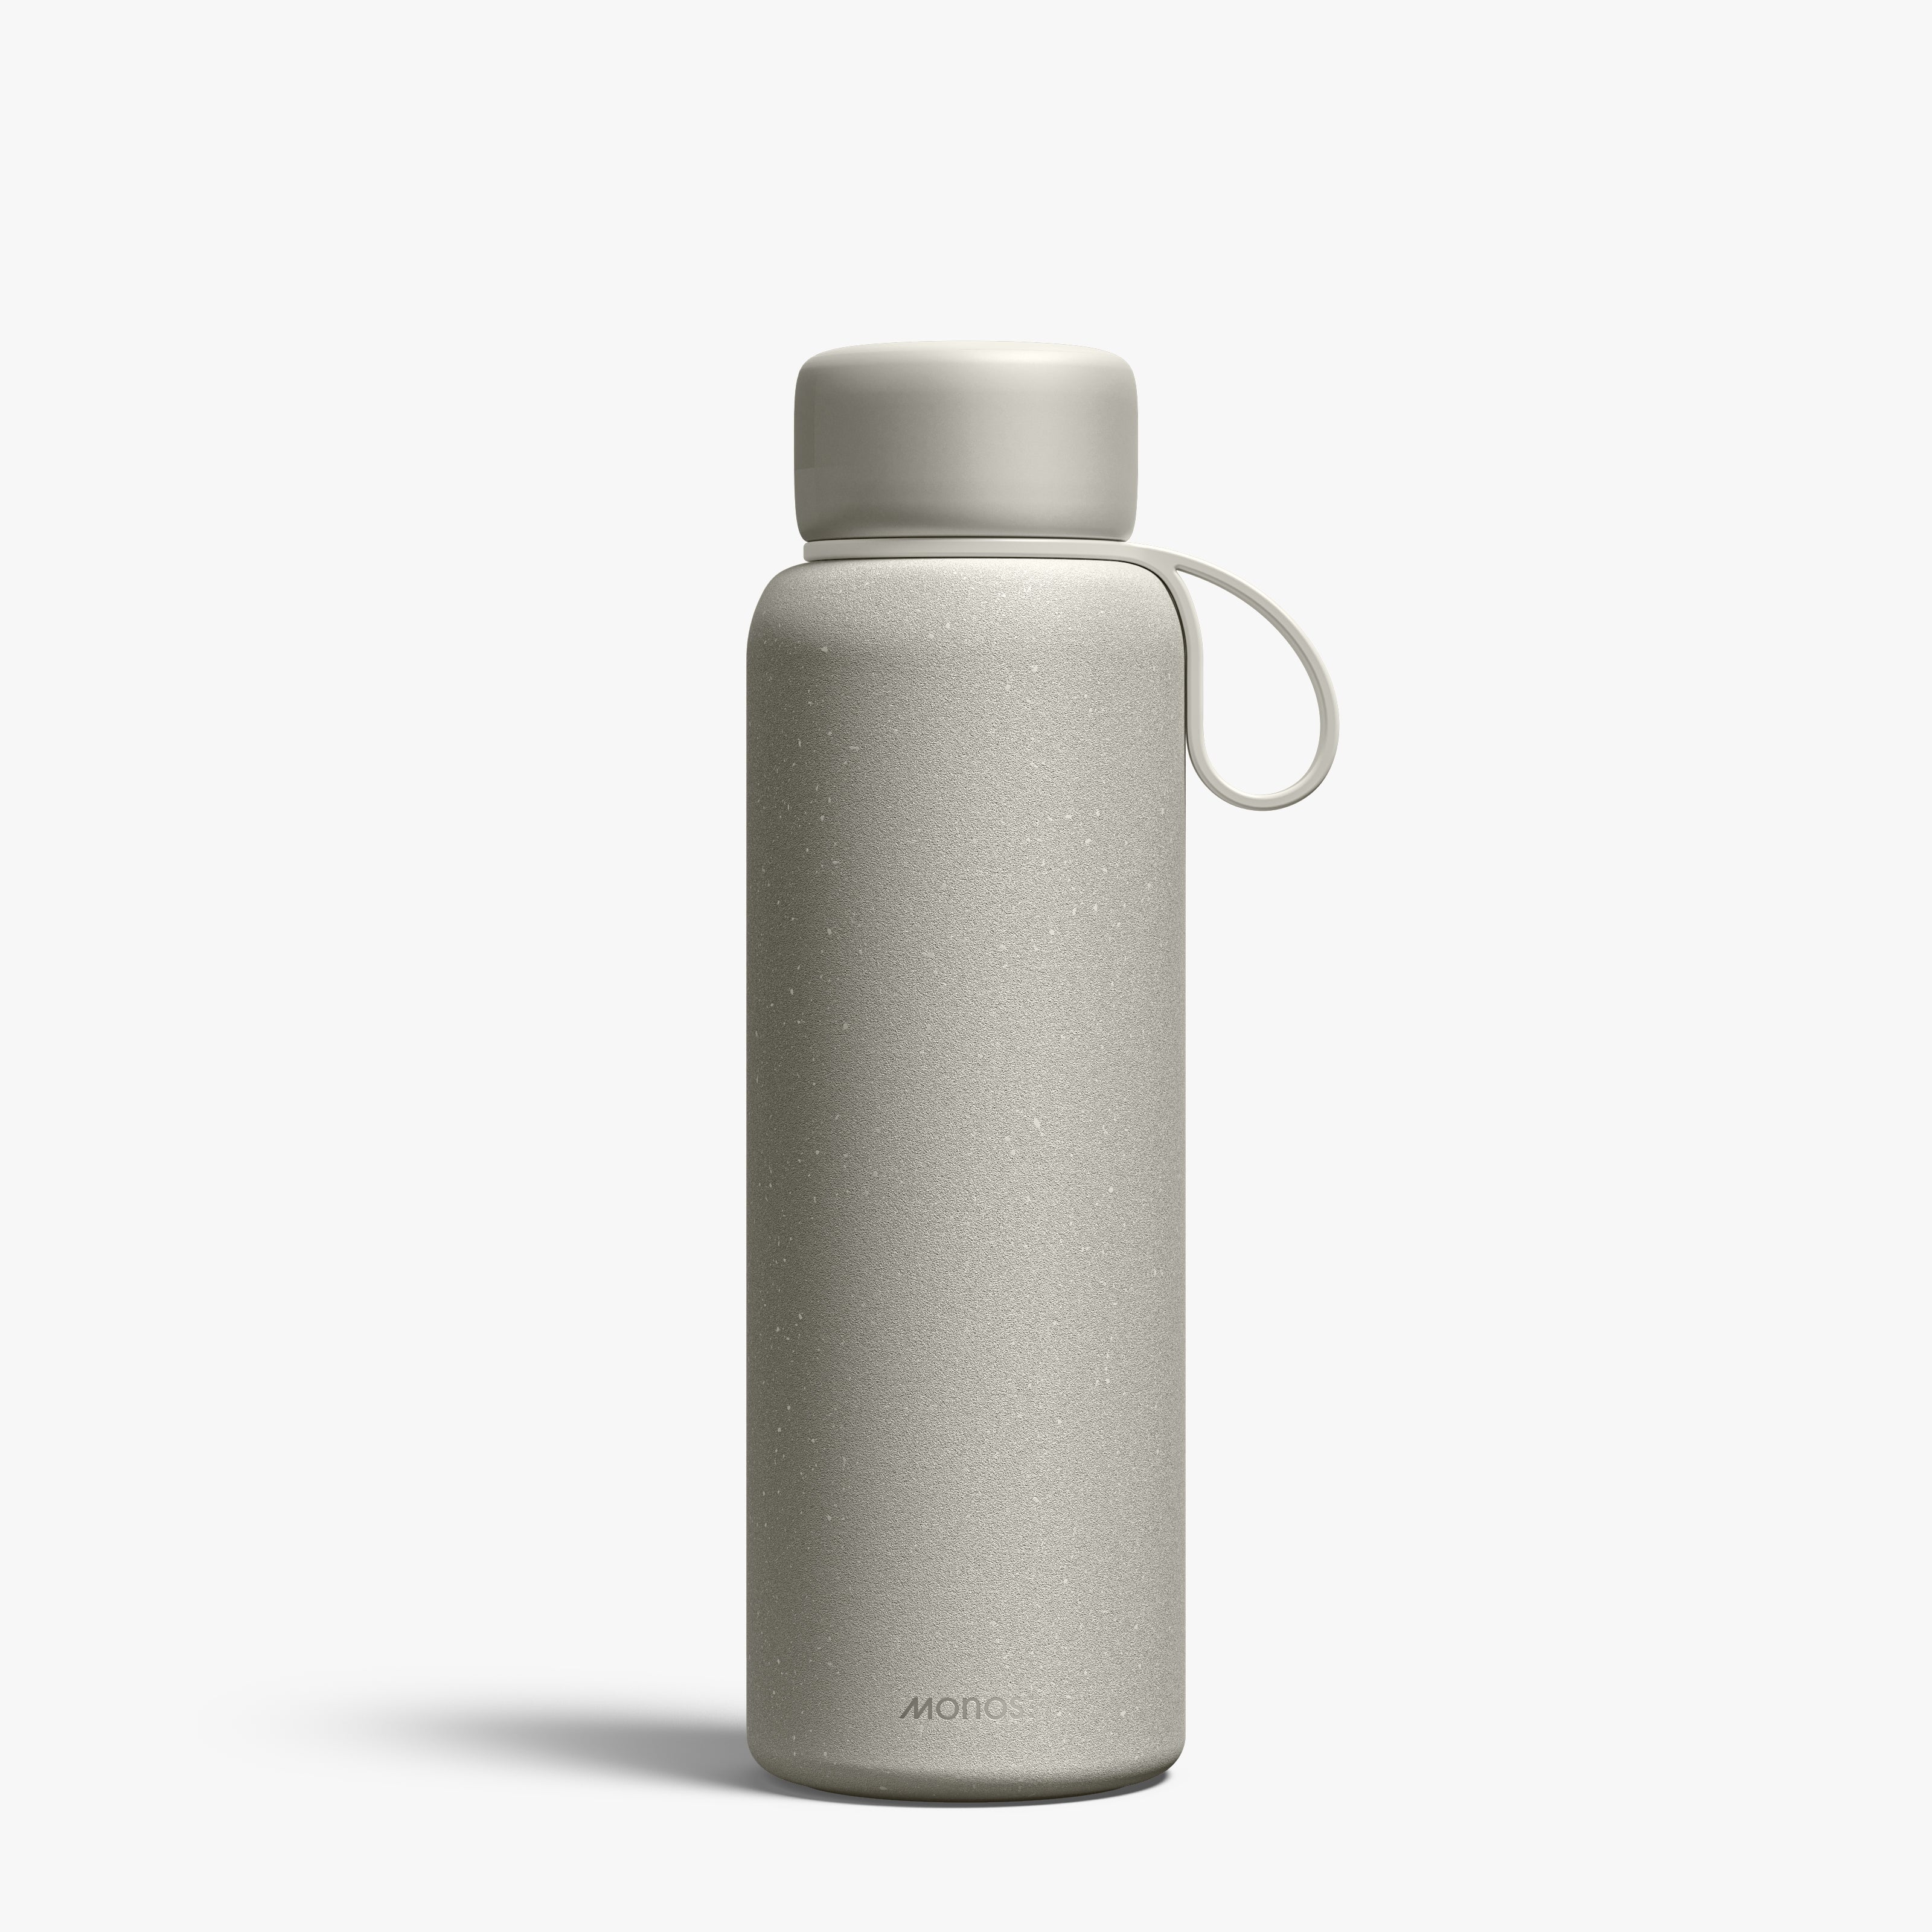 Kiyo UVC Water Bottle 500 ml - Dark Grey | Monos Travel Accessories